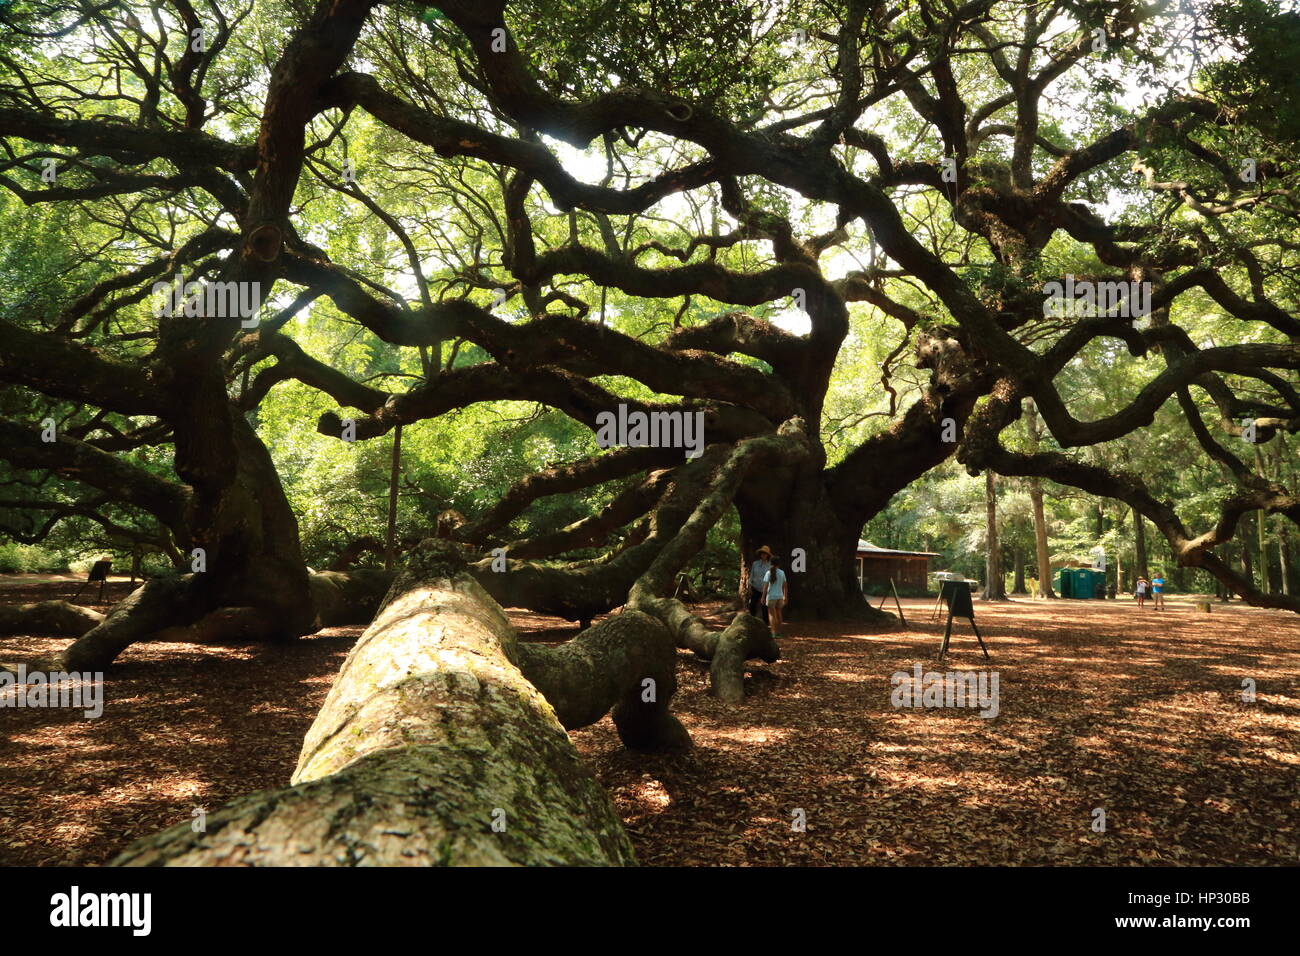 Historischen Angel Oak Tree auf James Island, South Carolina. Diese Live-Eiche hat enorme Niederlassungen und ist der älteste Baum östlich des Mississippi River Stockfoto